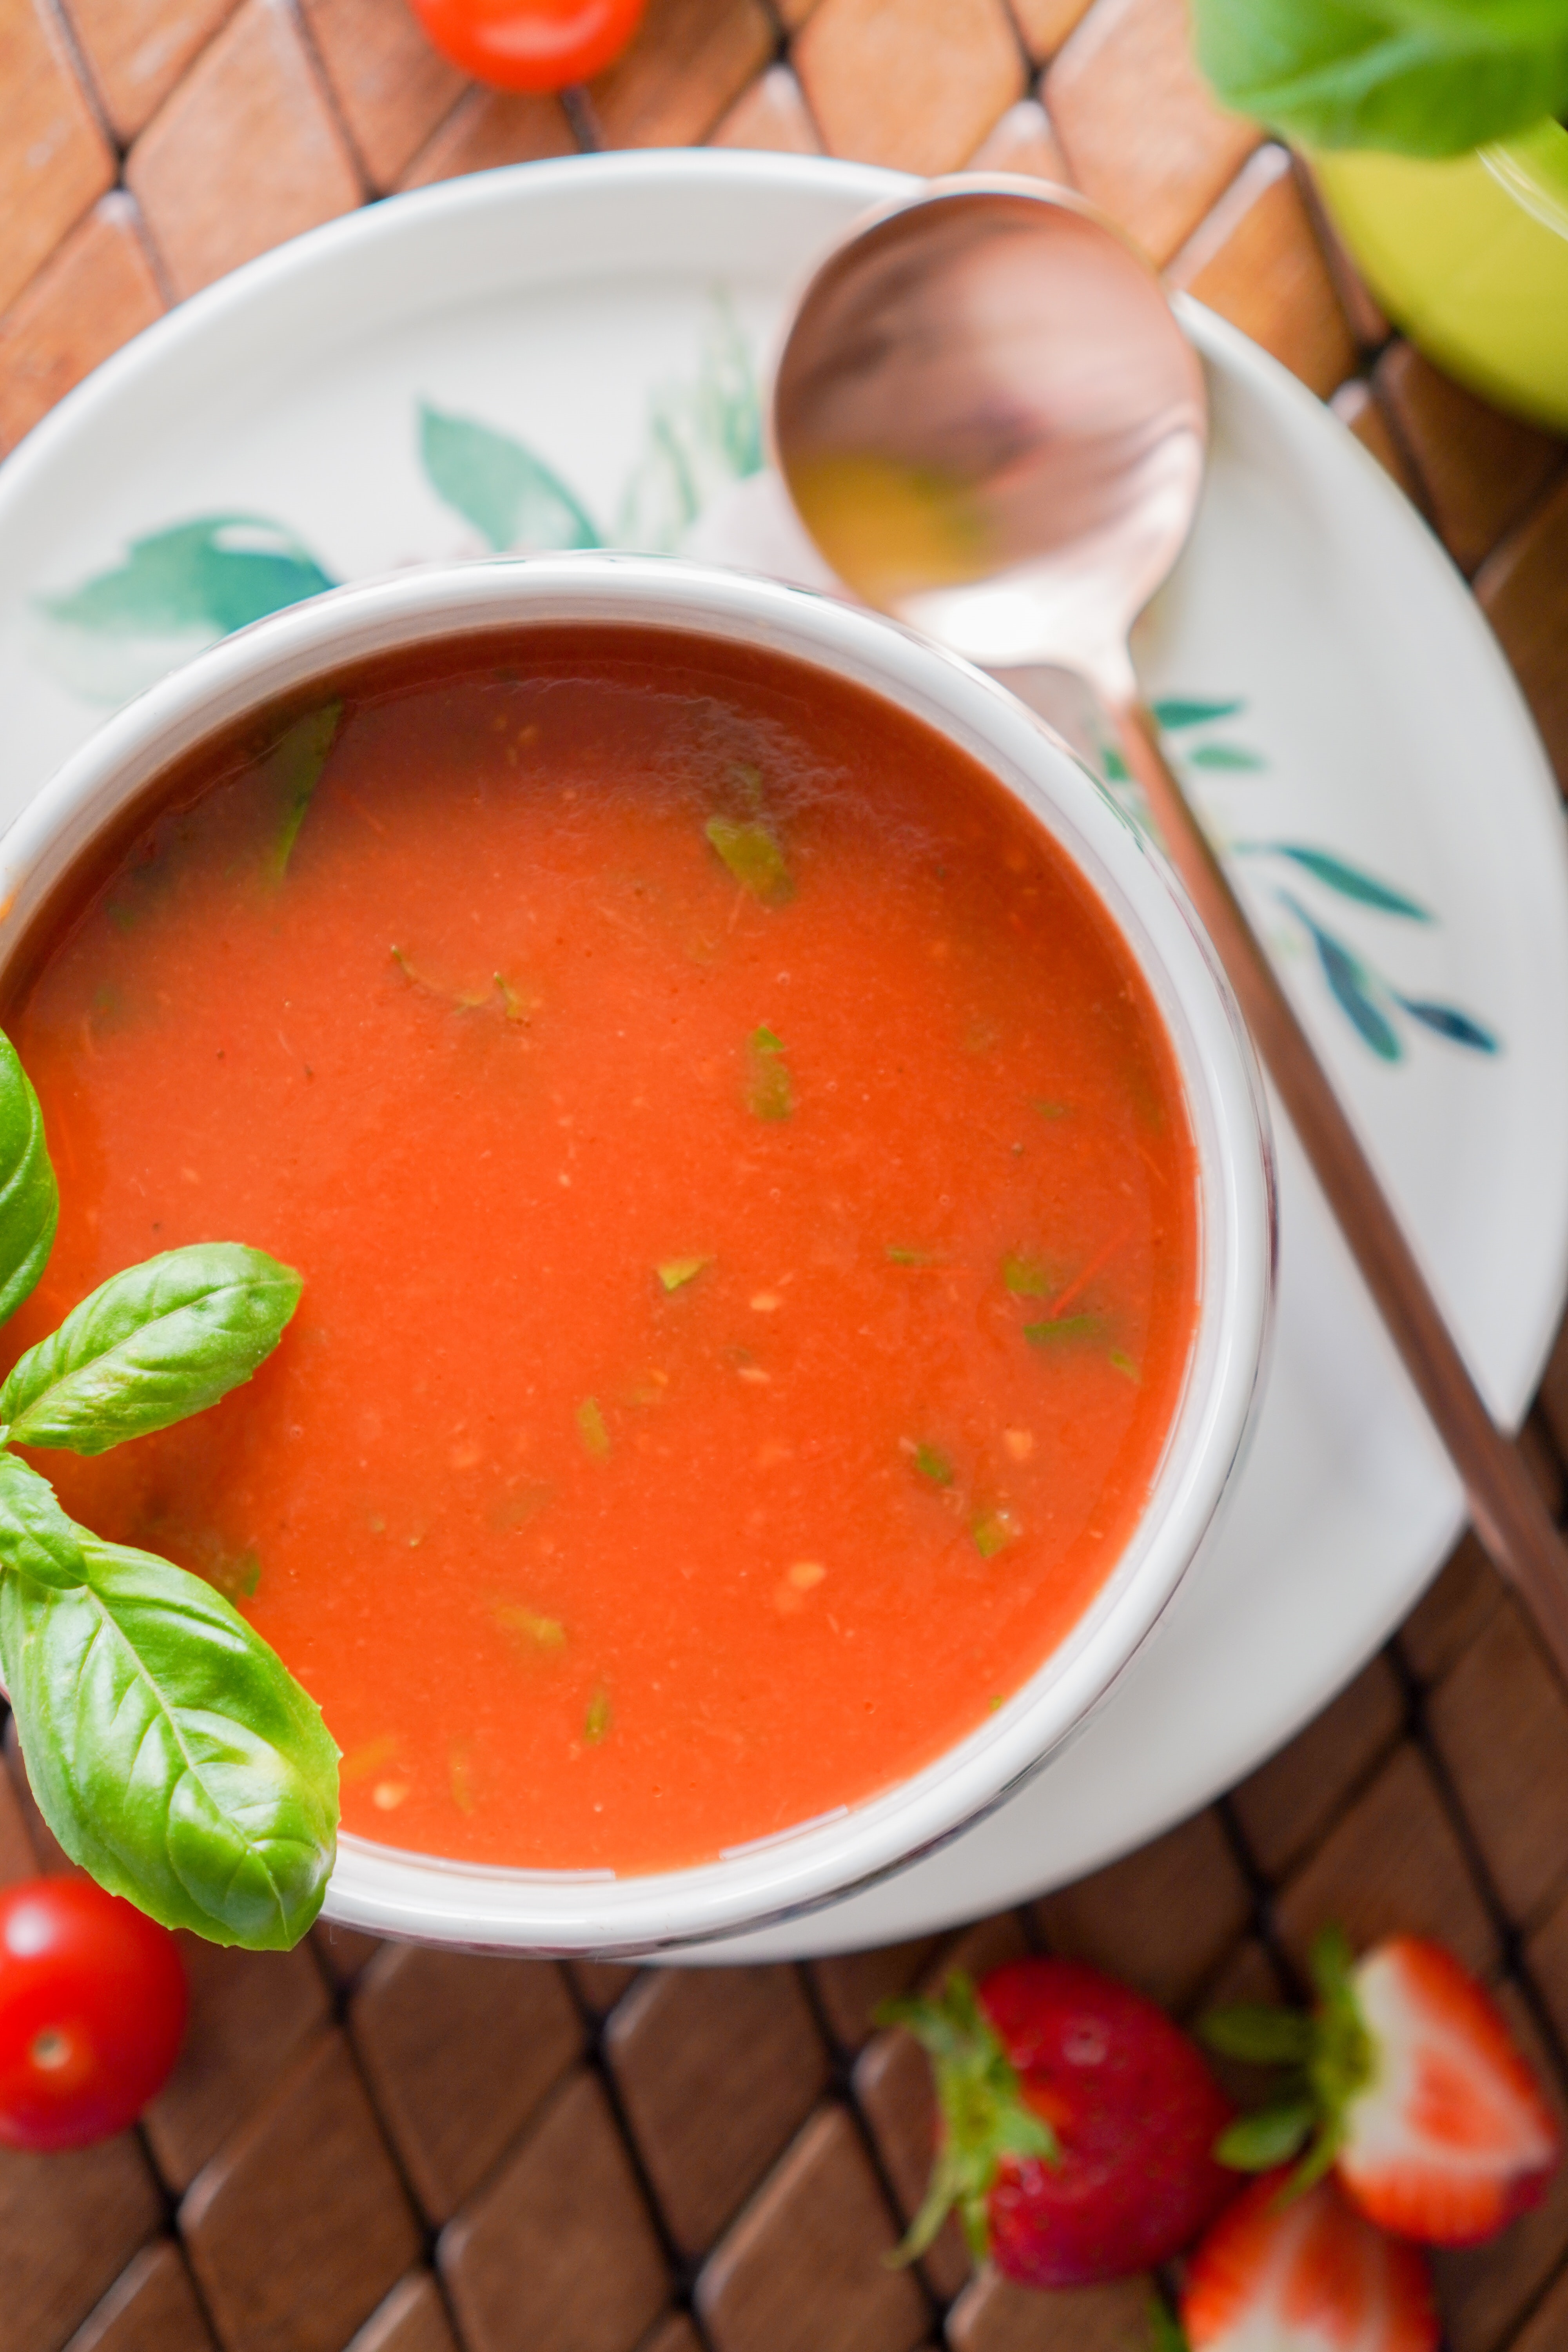 토마토 수프 효능 9가지 및 부작용